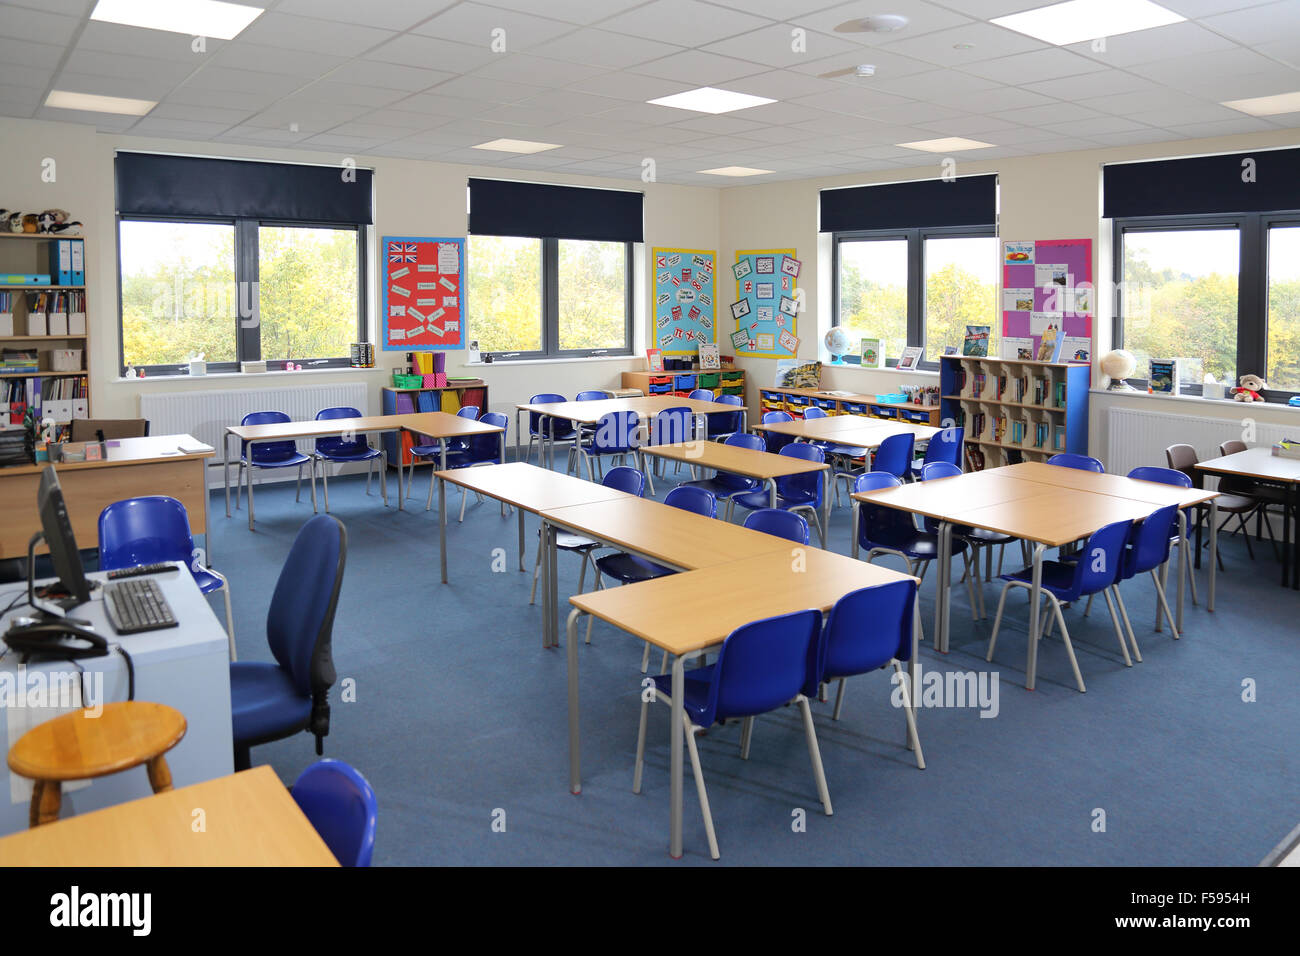 Ein Klassenzimmer in einem neu gebauten UK junior Schule. Schreibtische, Stühle und Lehrer Computer-Arbeitsplatz zeigt. Stockfoto